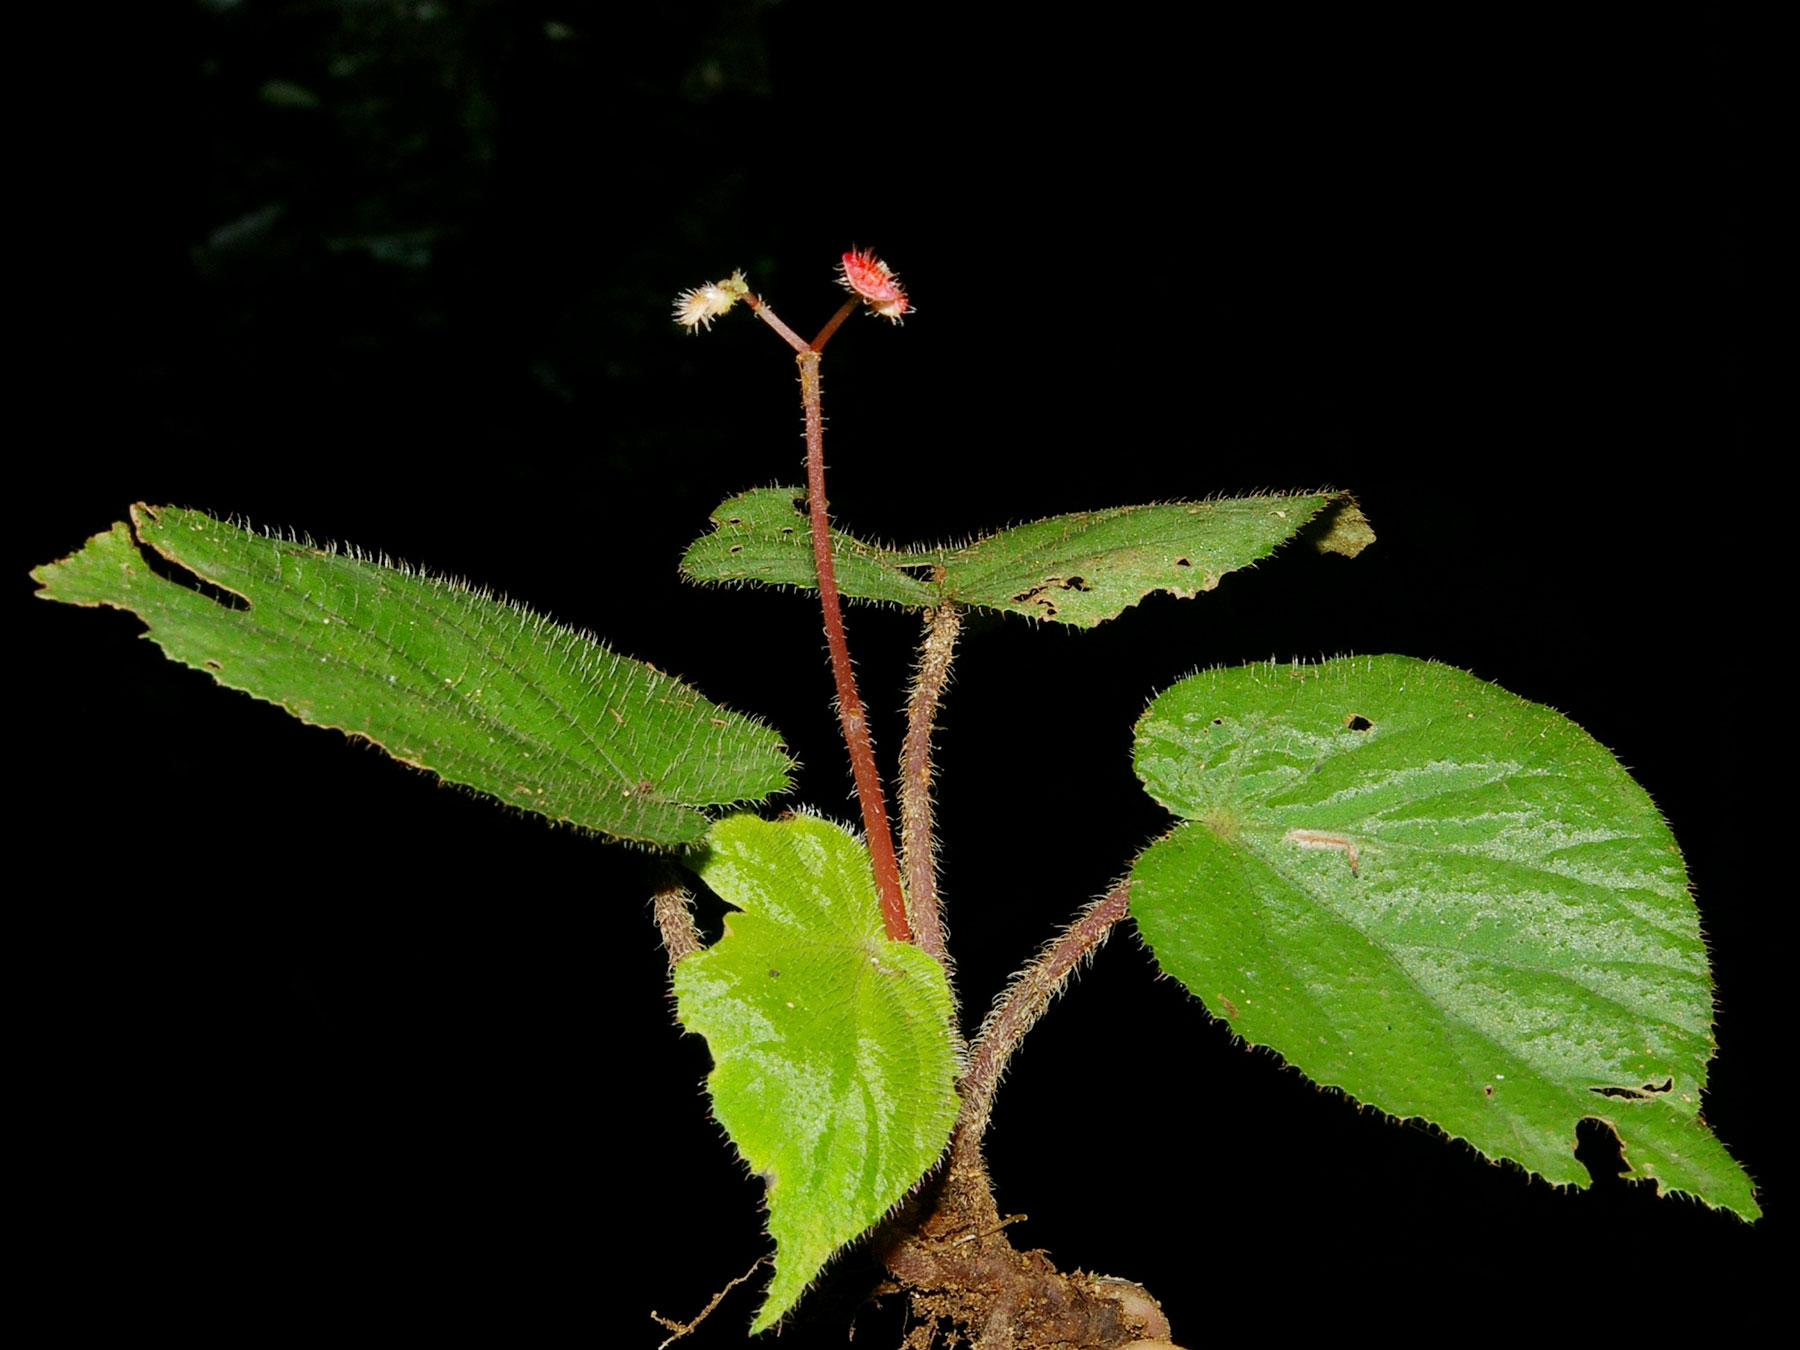 Begonia carletonii, especie endémica de Costa Rica y Oeste de Panamá